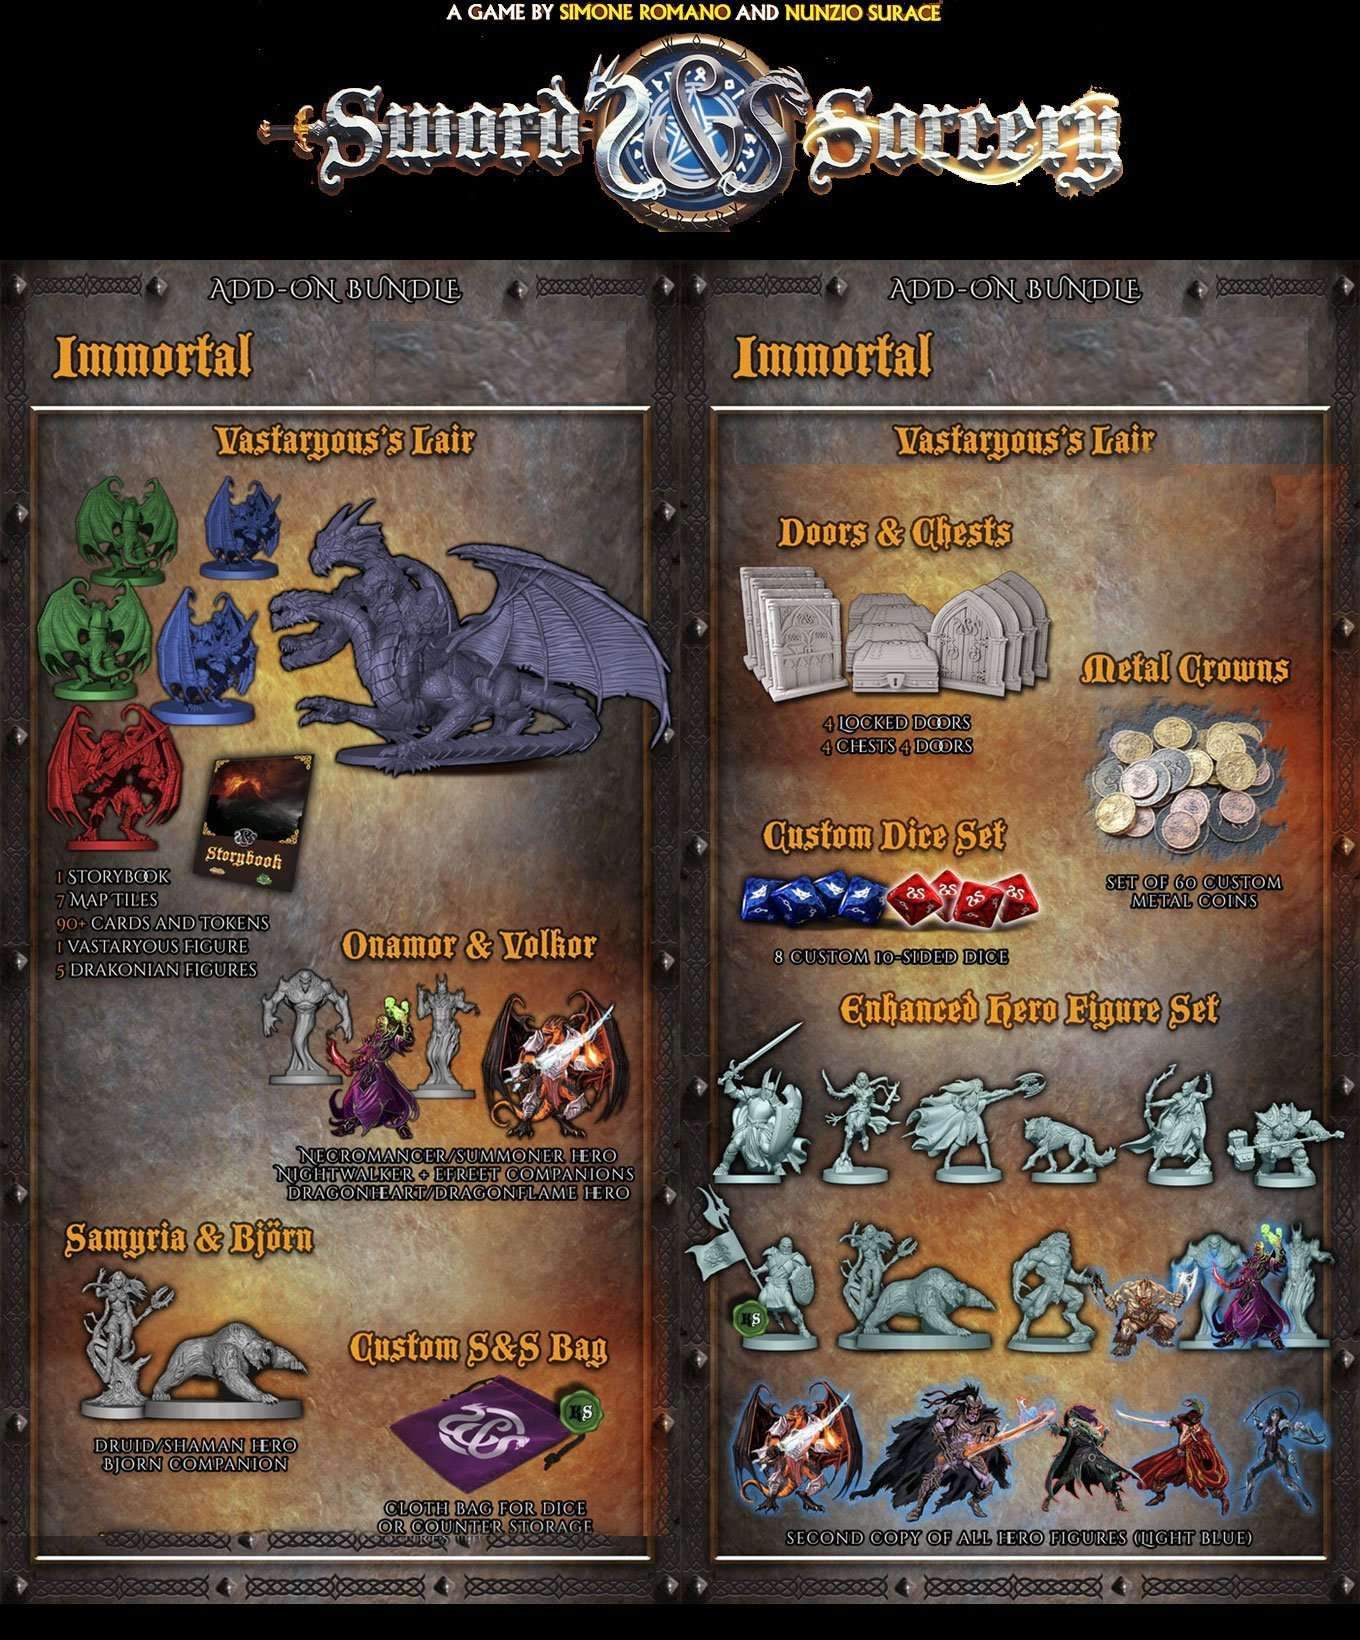 Sword & Sorcery - Suplemento de juego de mesa de Kickstarter Bundle (especial Kickstarter) Ares Games